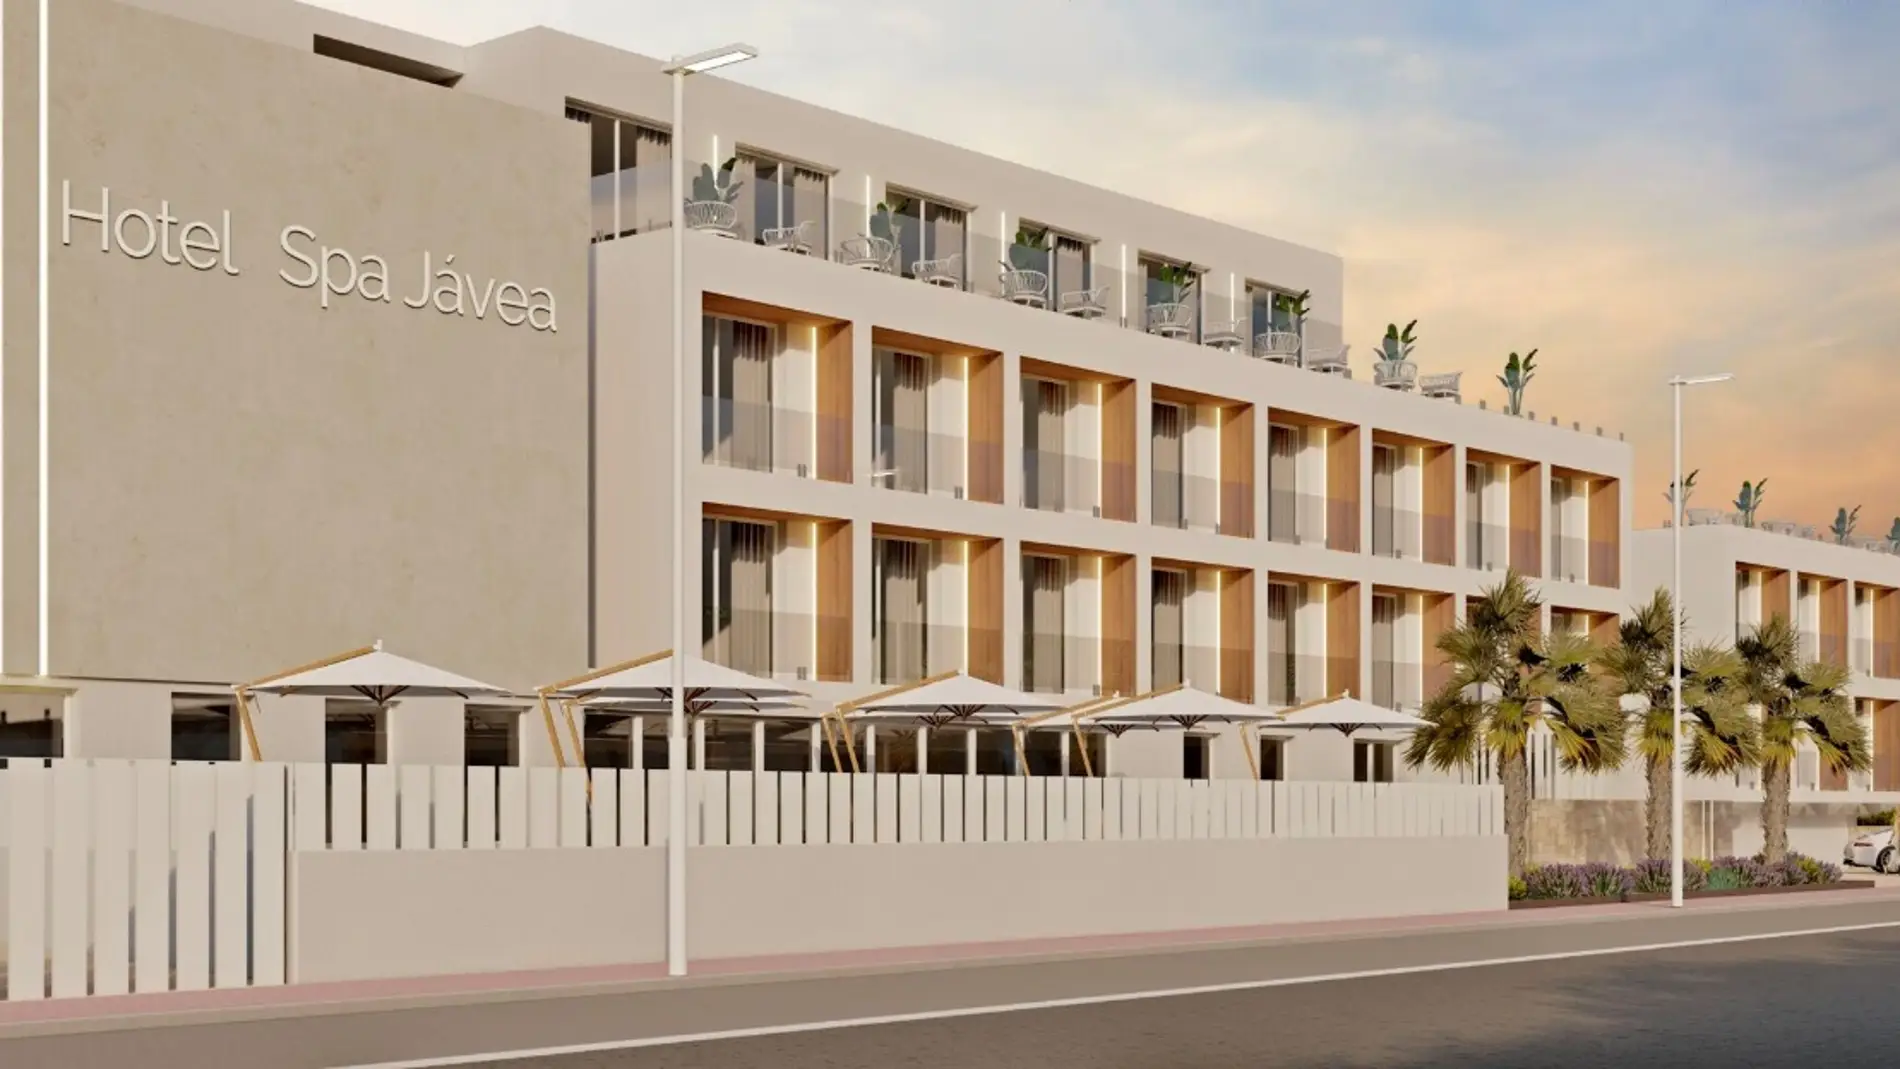 SH Hoteles anuncia la apertura de un nuevo hotel 4 estrella en Jávea para 2026